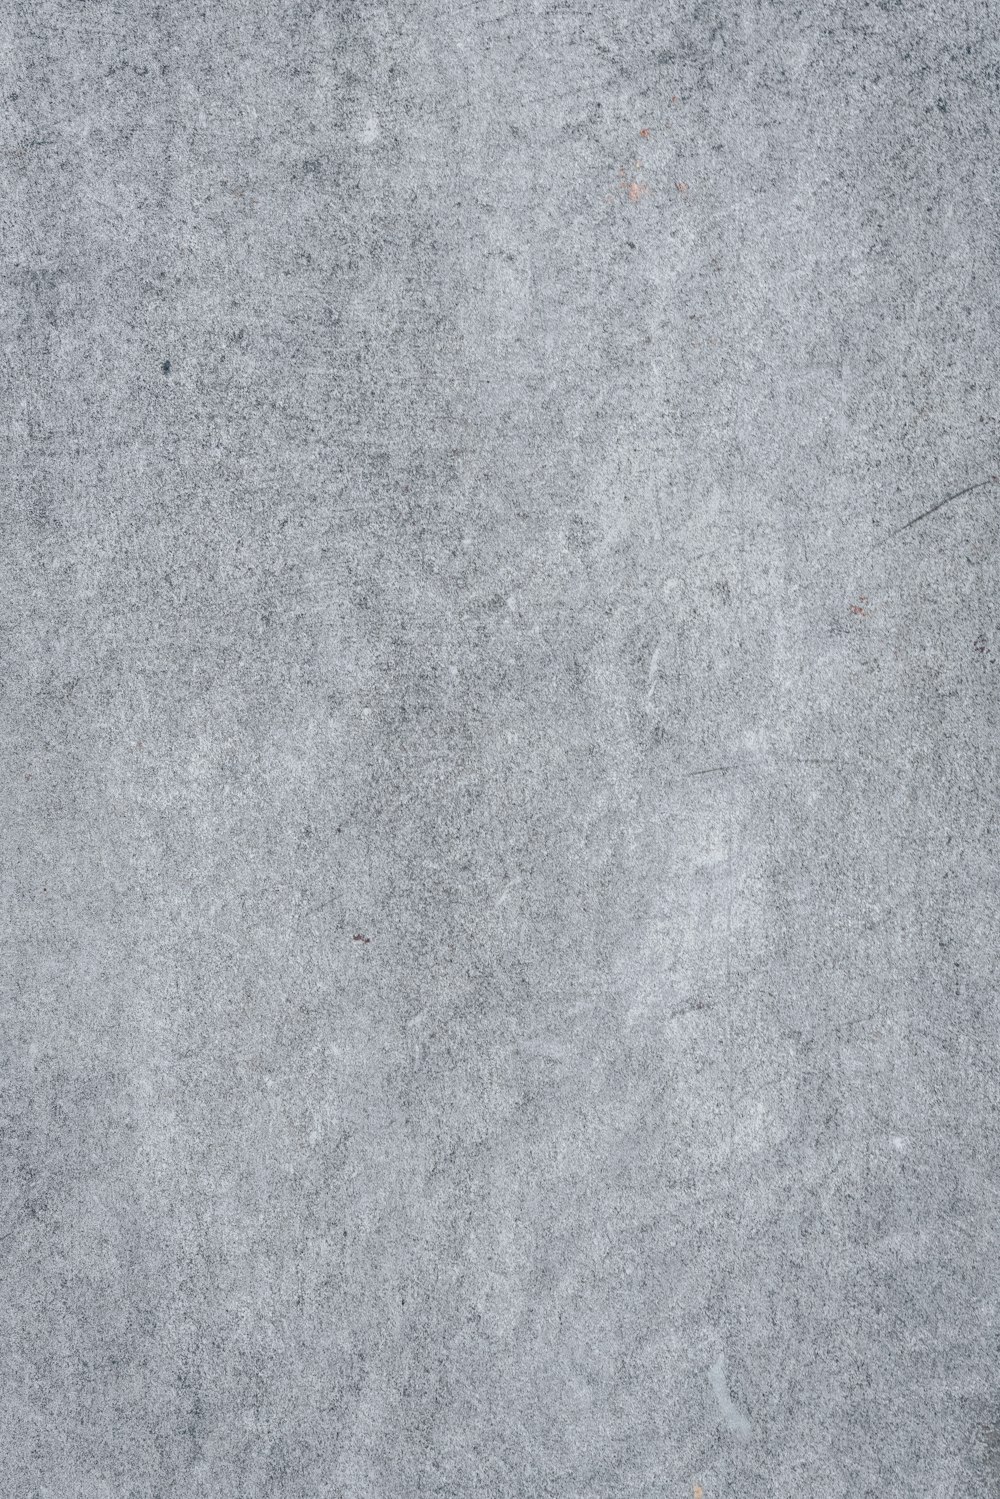 Un primer plano de una superficie de hormigón gris